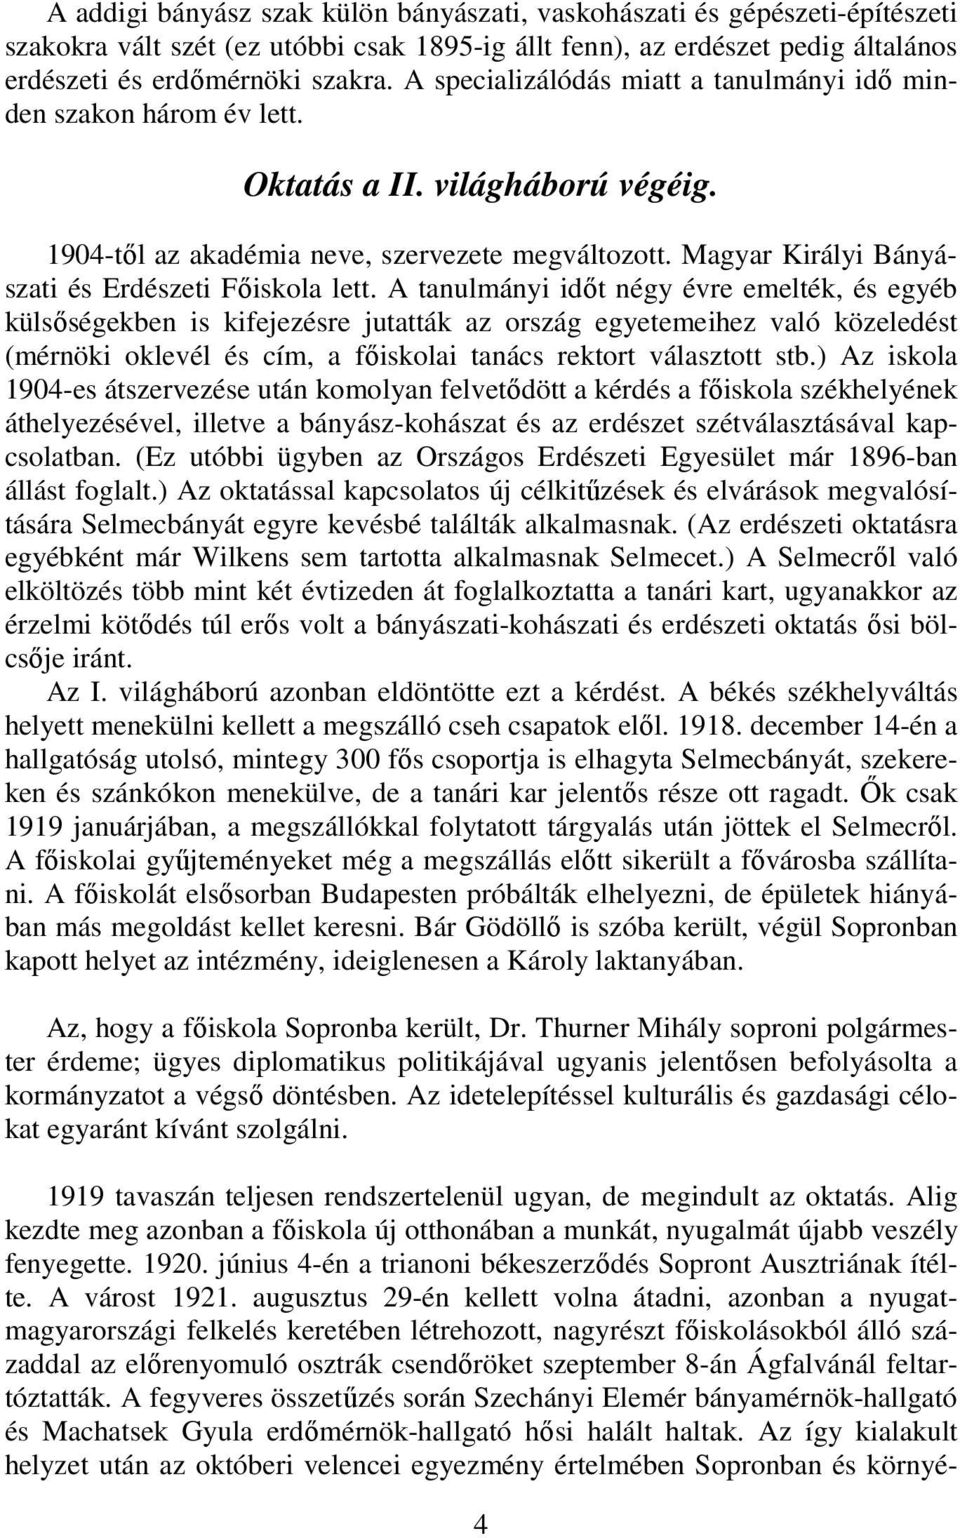 Magyar Királyi Bányászati és Erdészeti Fıiskola lett.